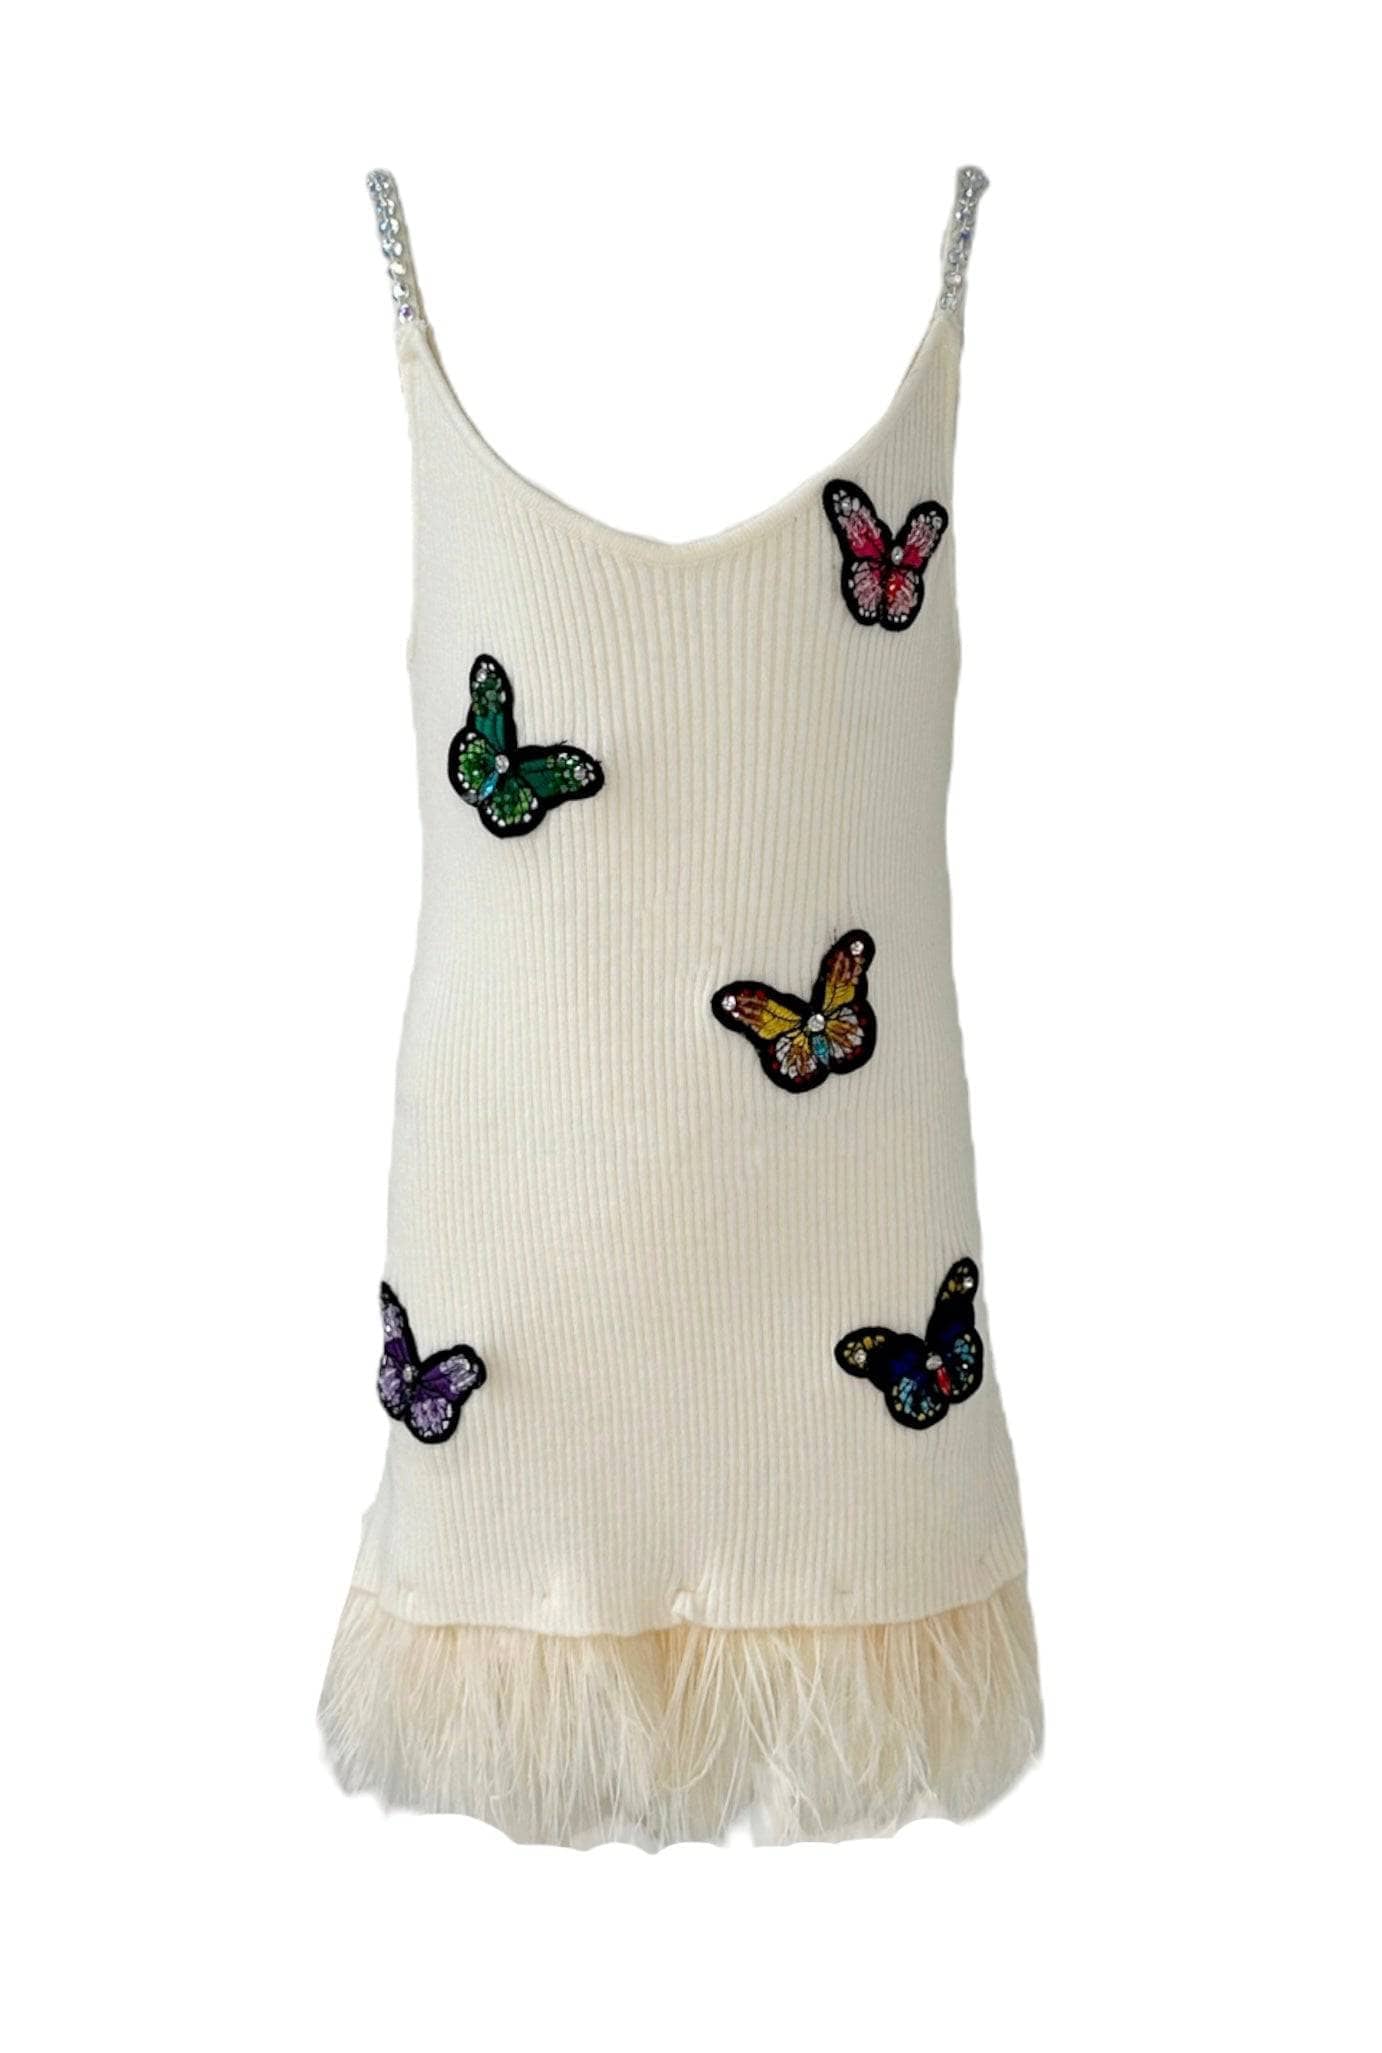 butterfly dress for women